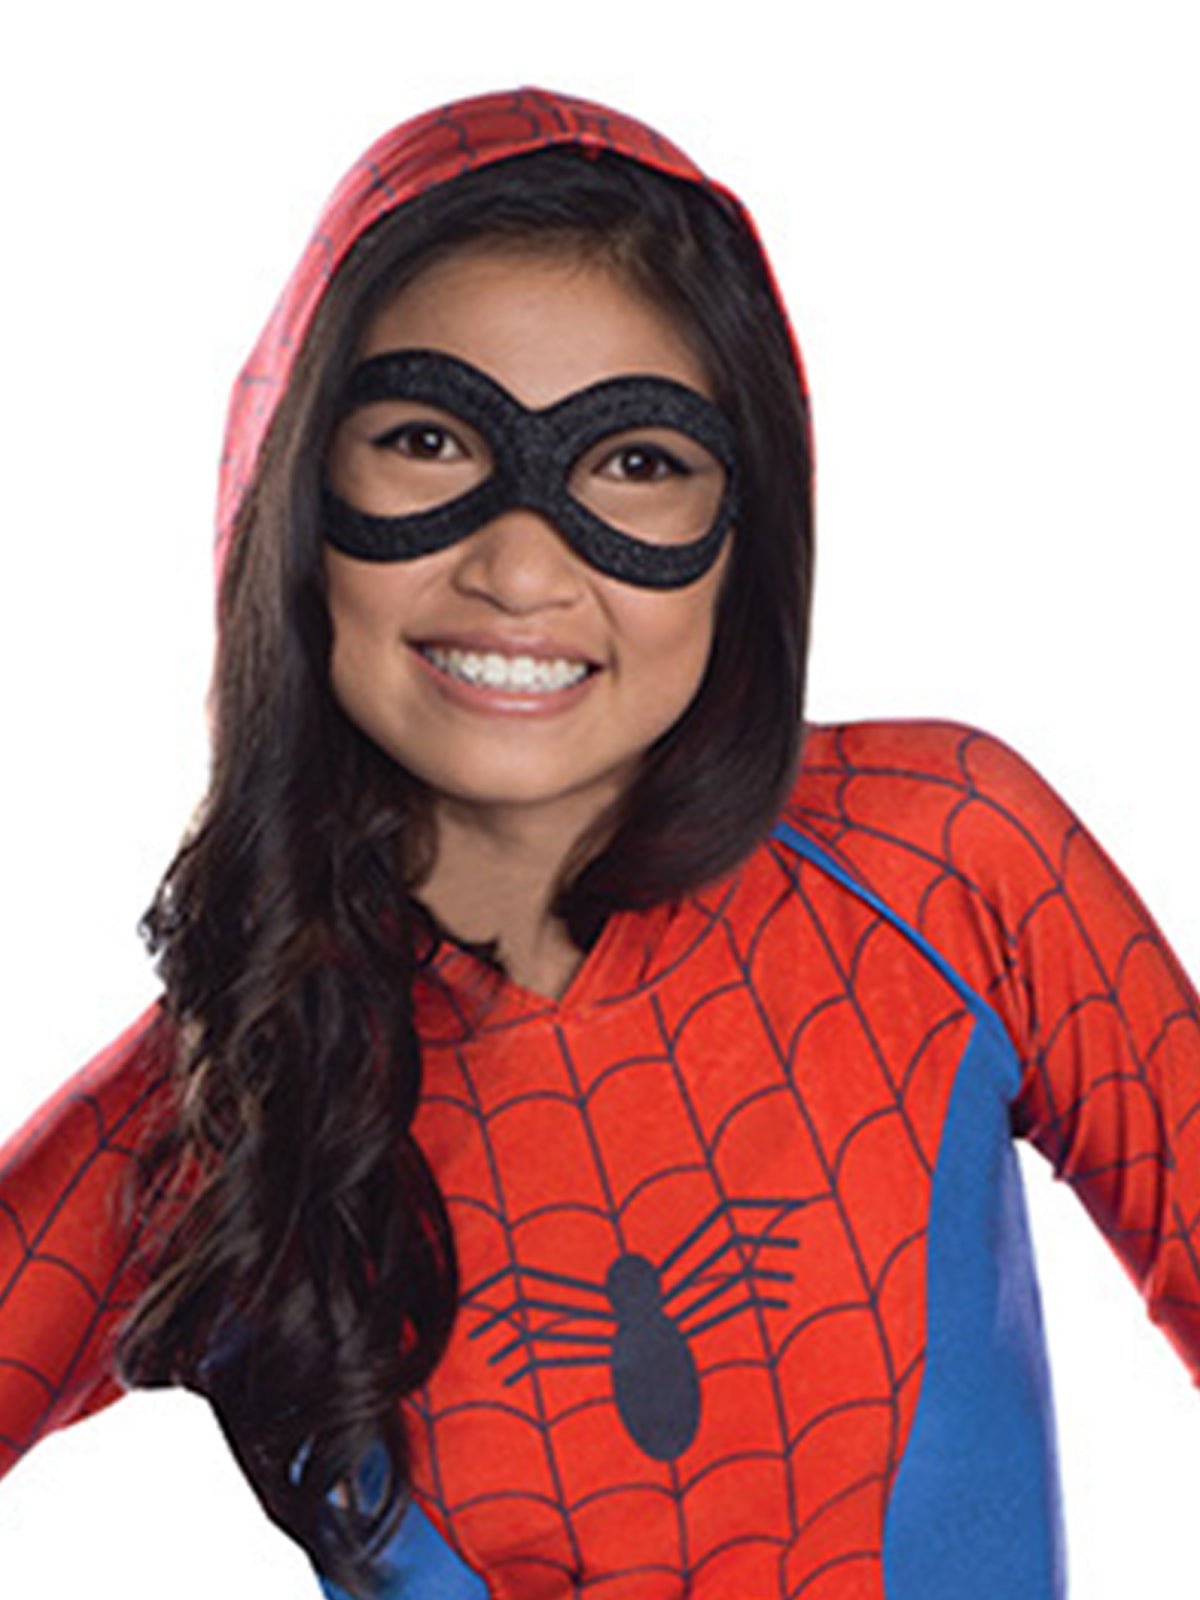 Spider-Girl Hoodie Dress for Kids & Tweens - Marvel Spider-Girl